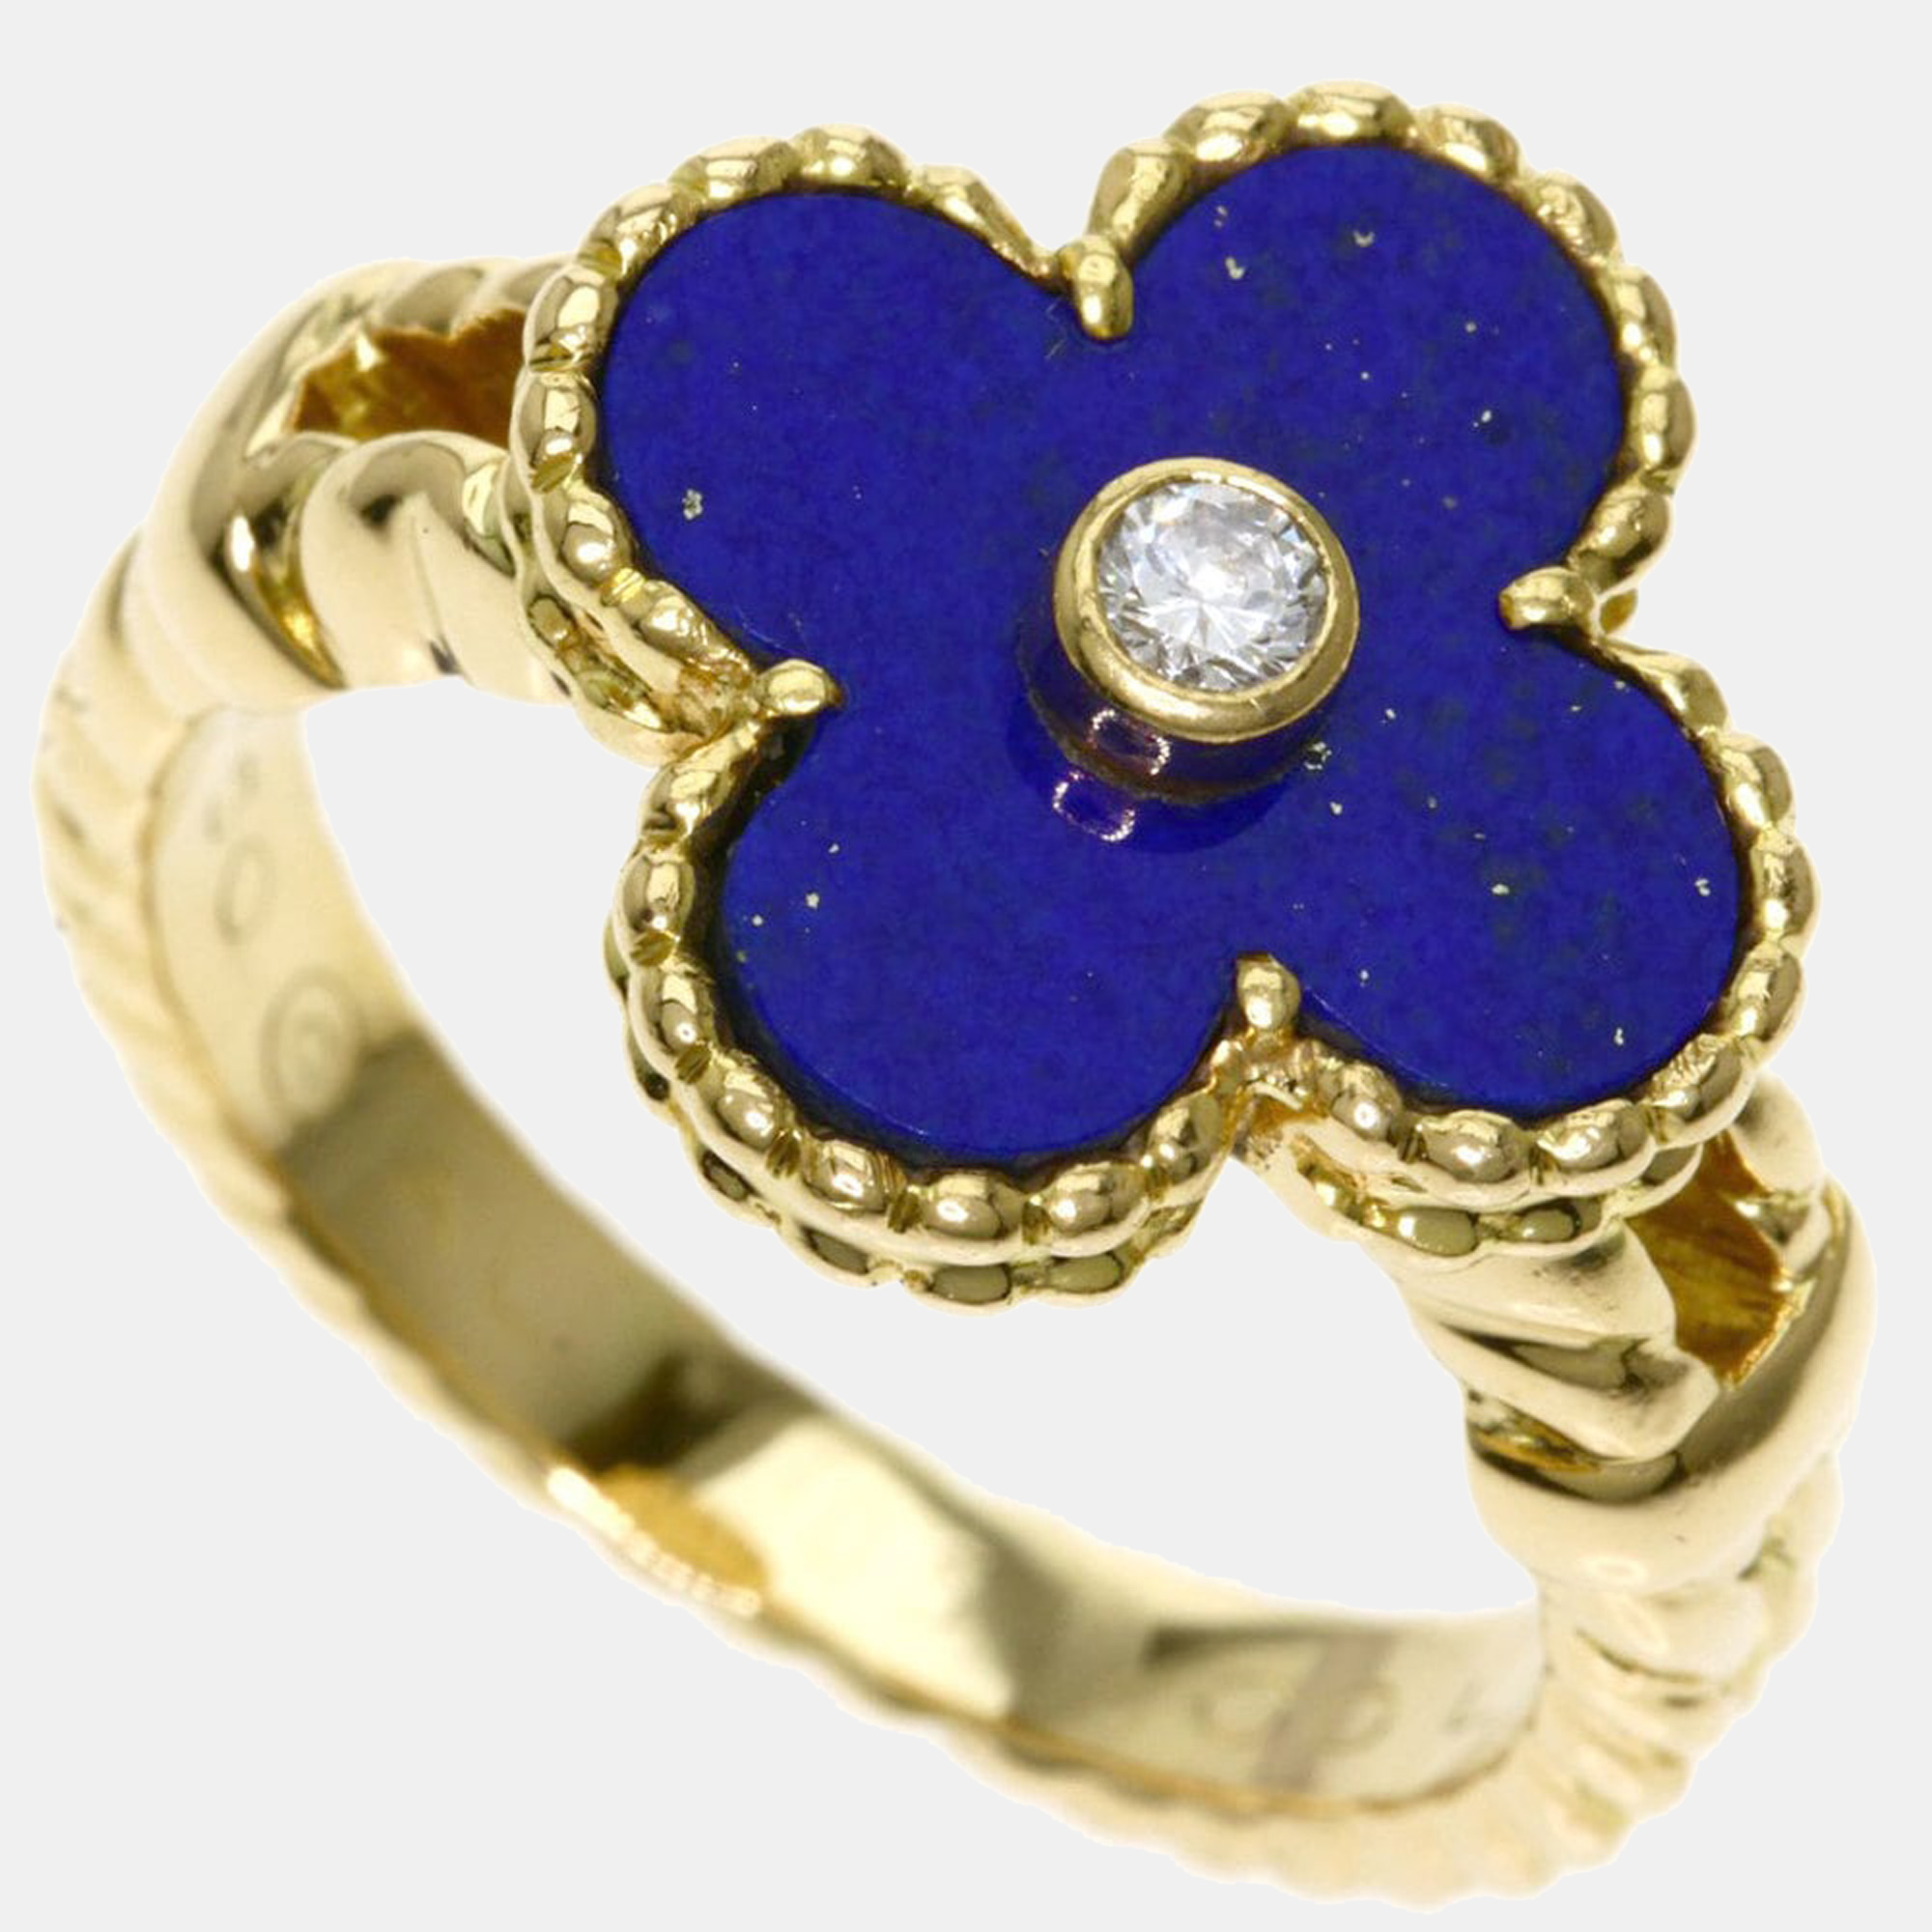 

Van Cleef & Arpels Lapis Lazuli Diamond Rings K18 Yellow Gold Women's Ring Size EU 54.5 - US 7